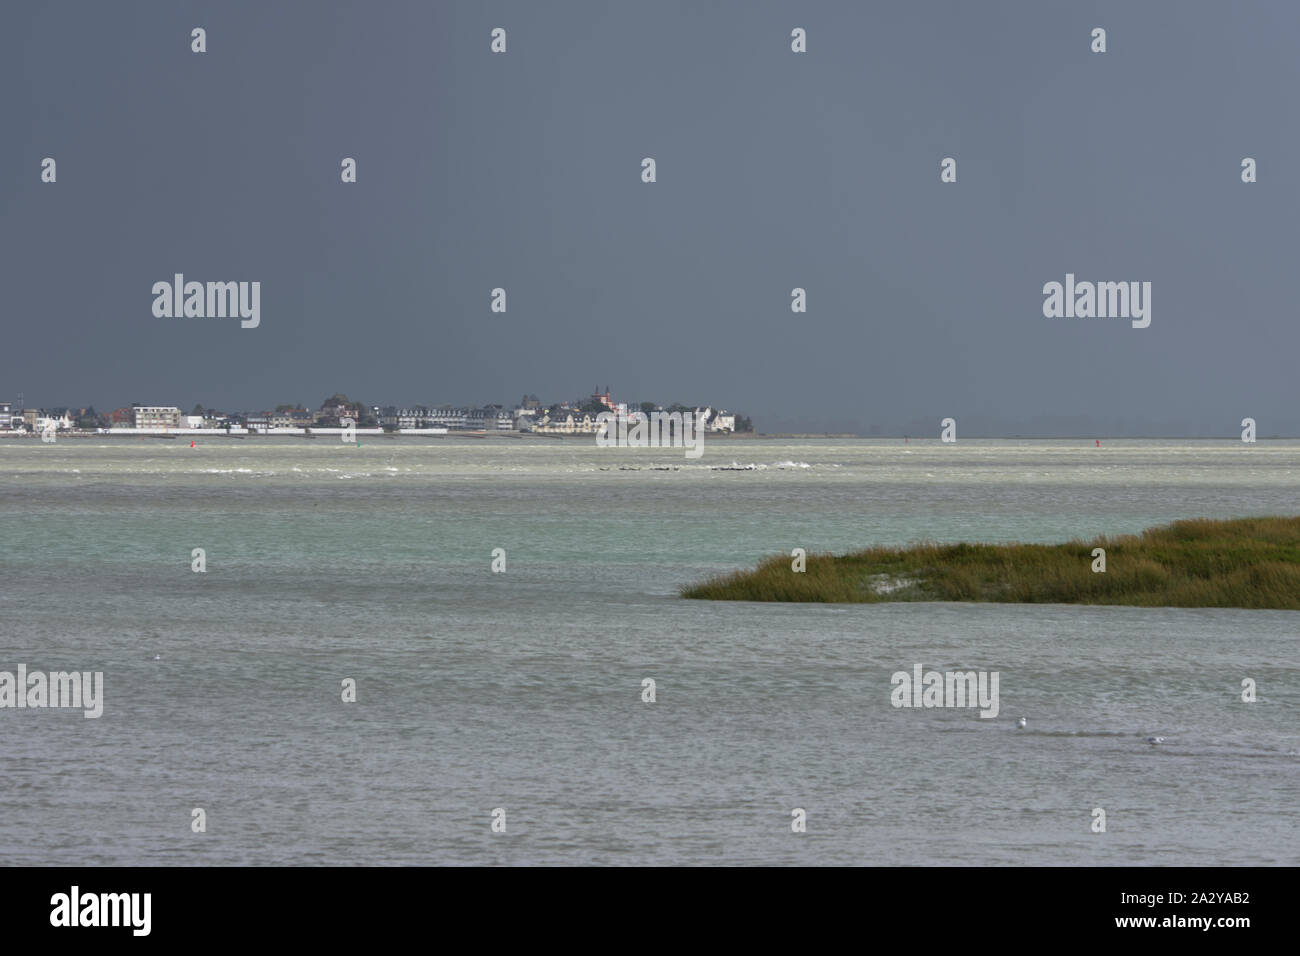 La baie de somme, vue du Crotoy à partir du Hourdel par un jour de grande marée.Ciel chargé. Stock Photo